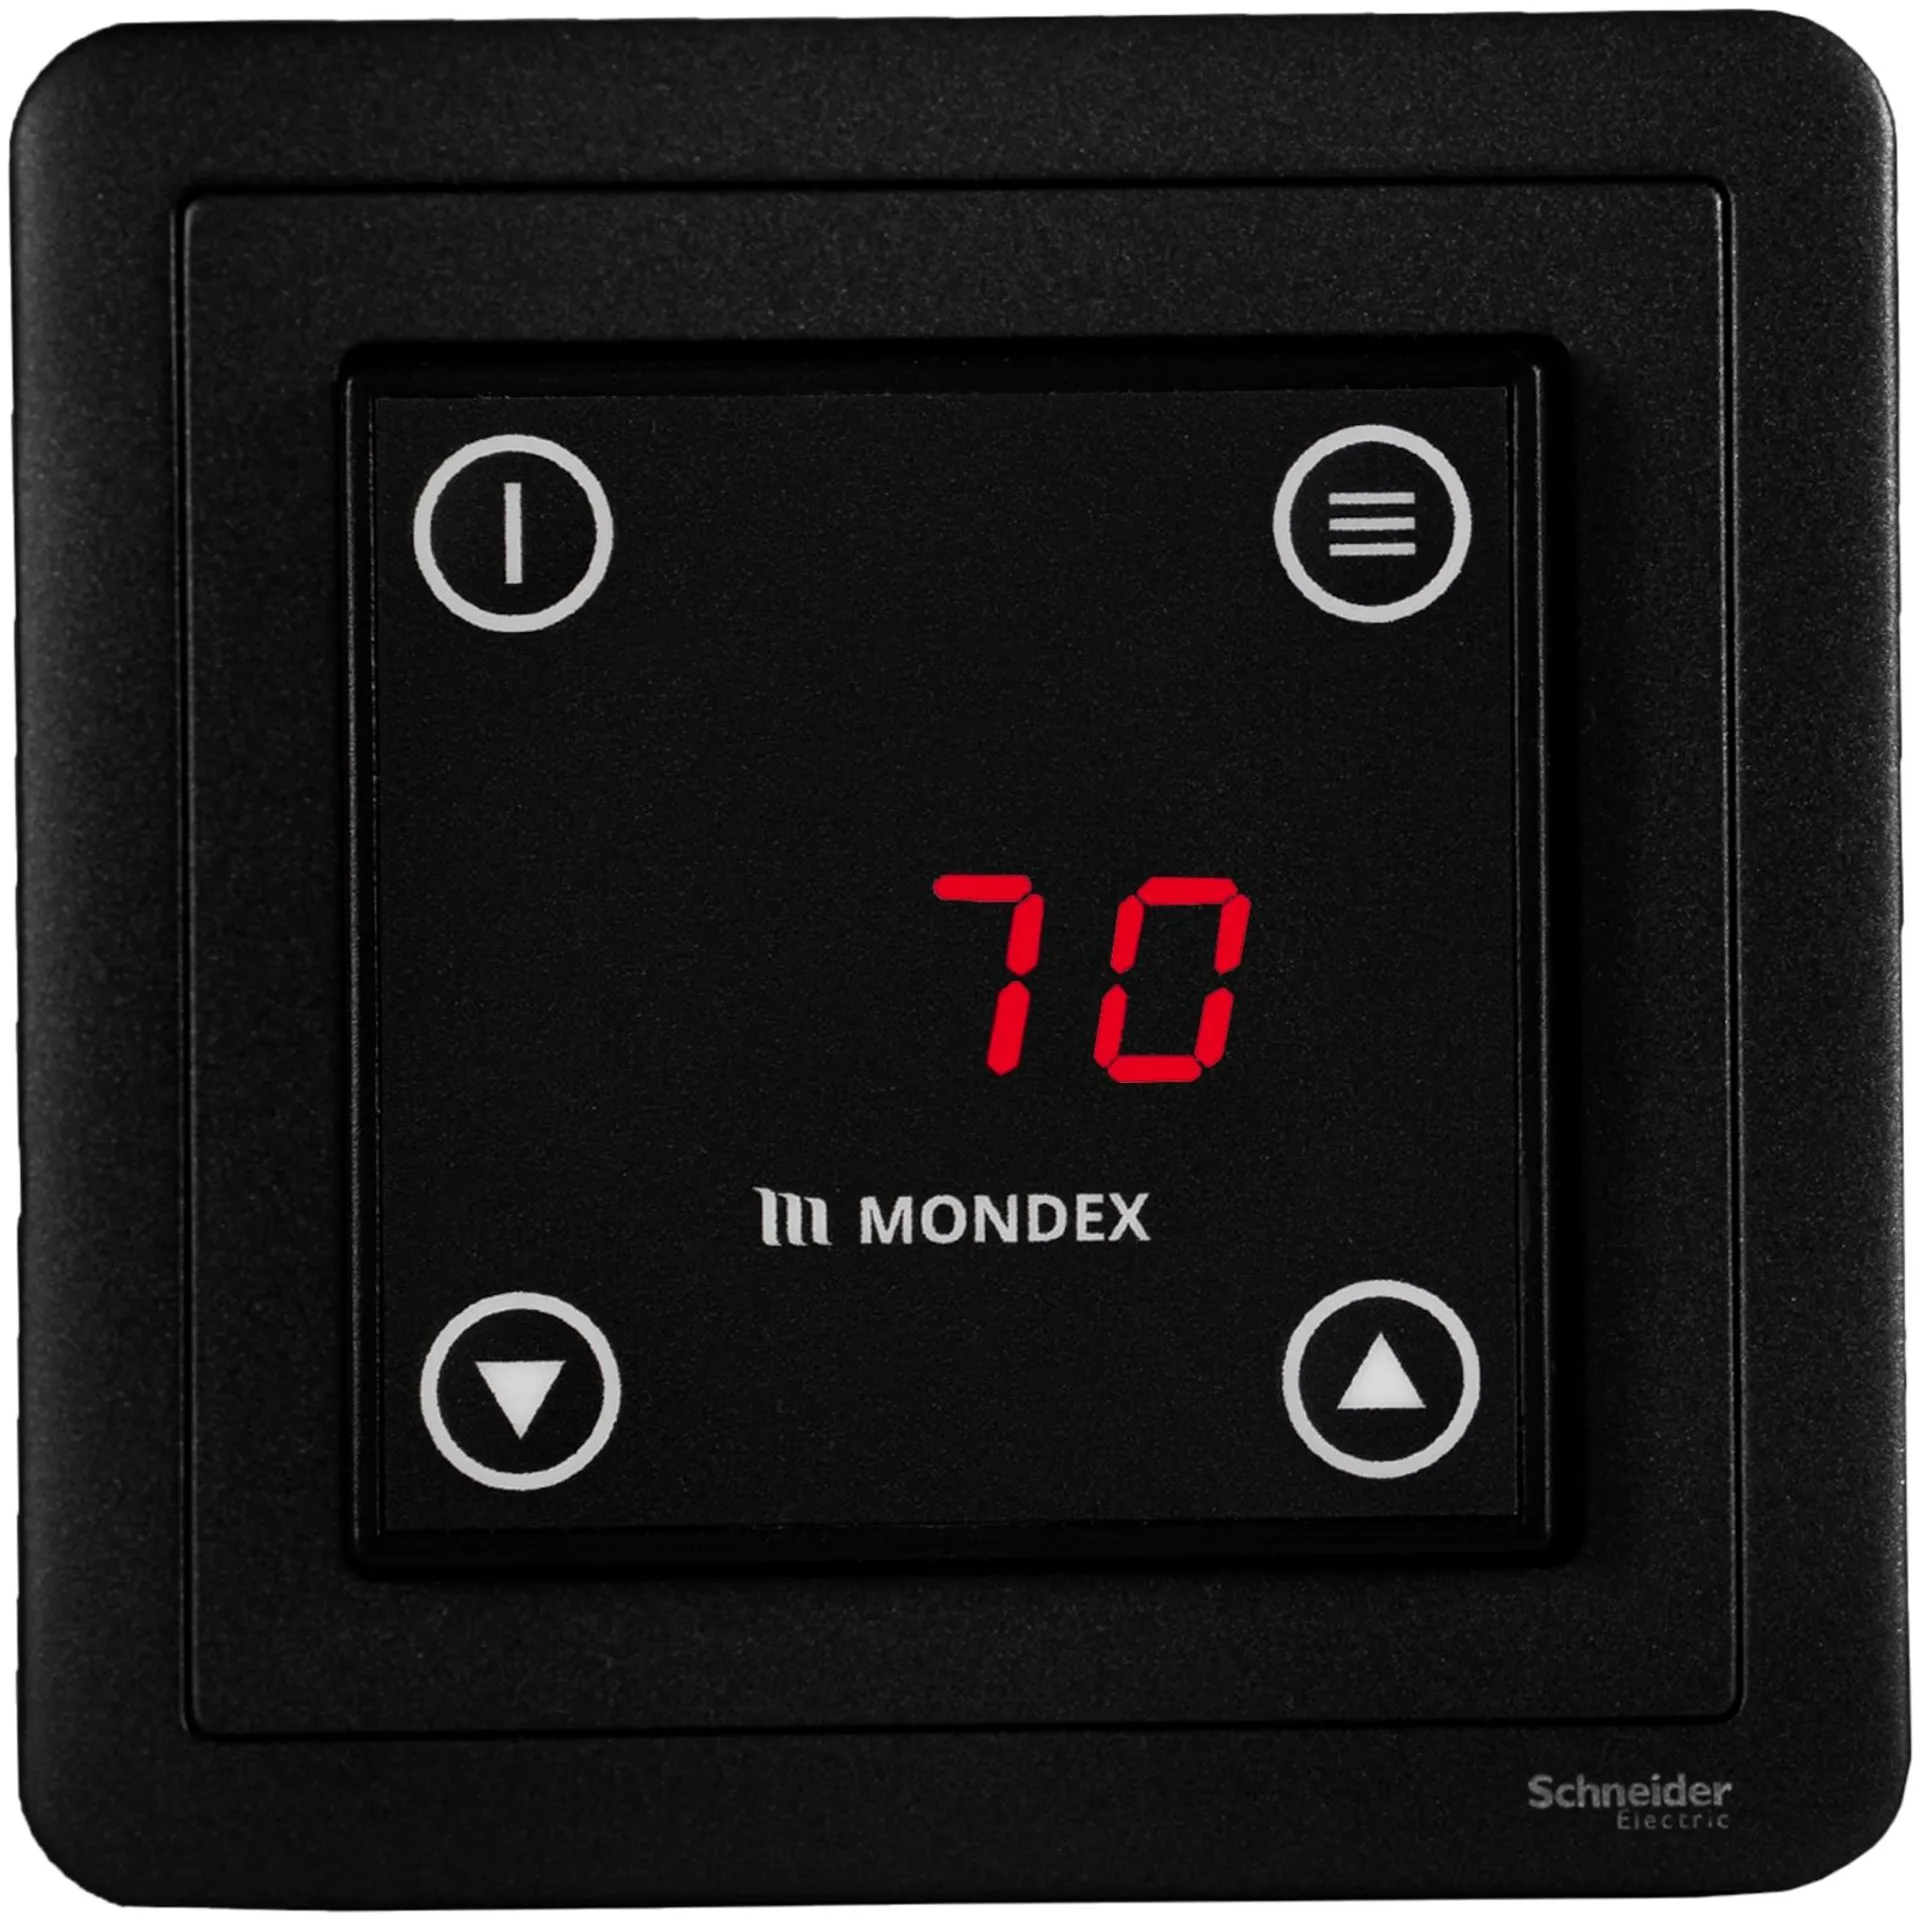 Sähkökiuas Mondex Kalla E2 6.6 KW musta - 2